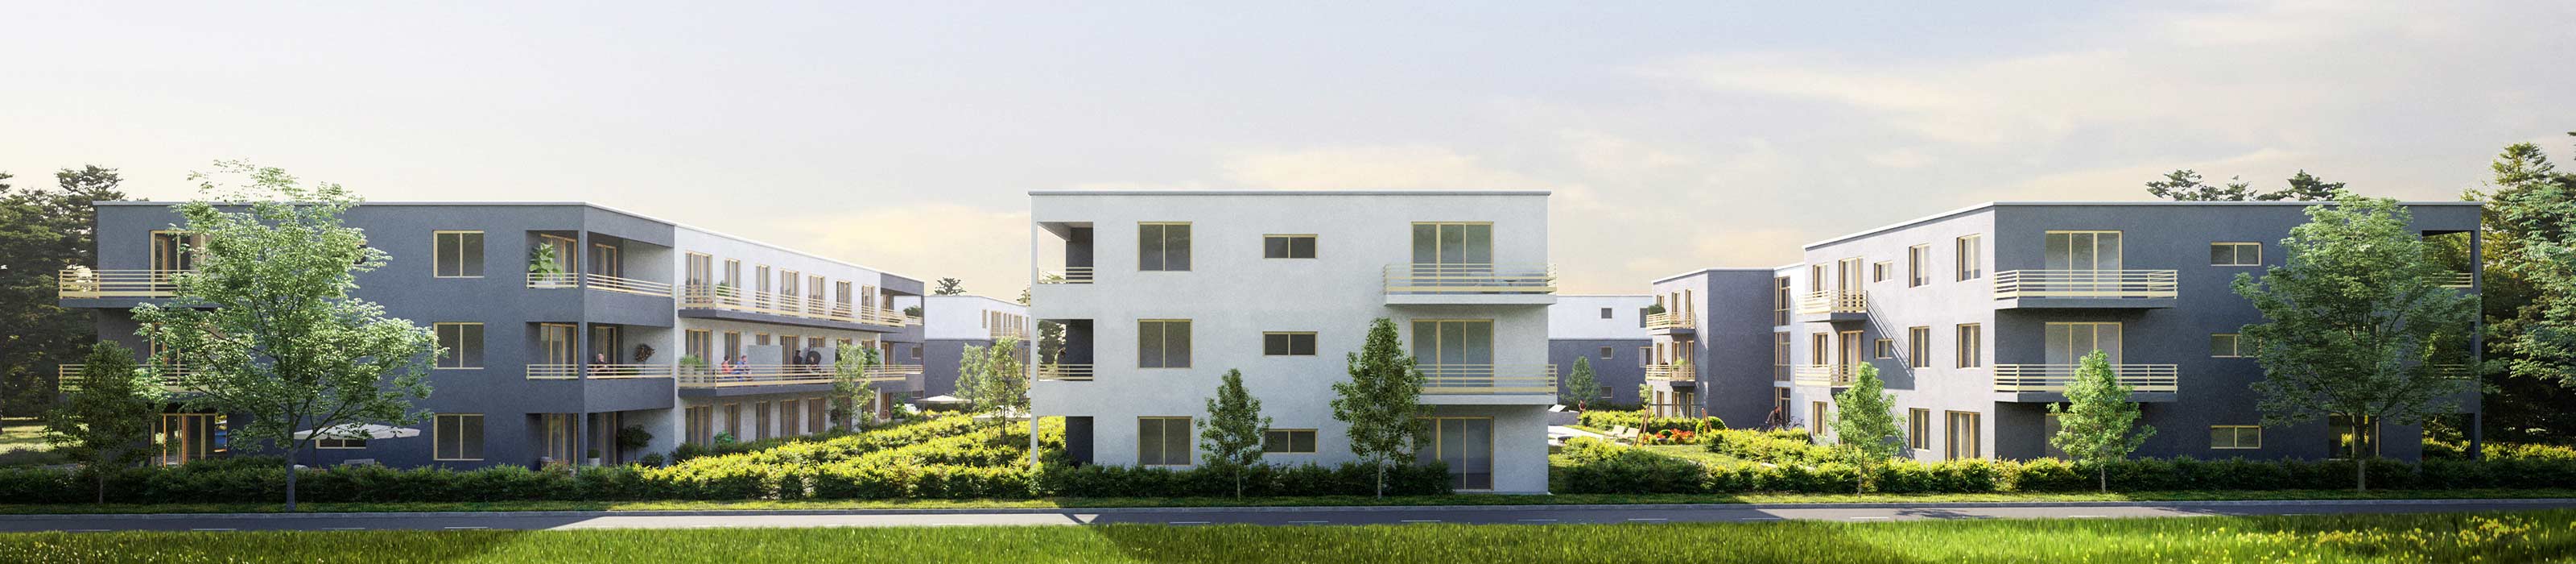 Panorama, Neubau Wohnquartier mit 140 Wohnungen in Rehfelde